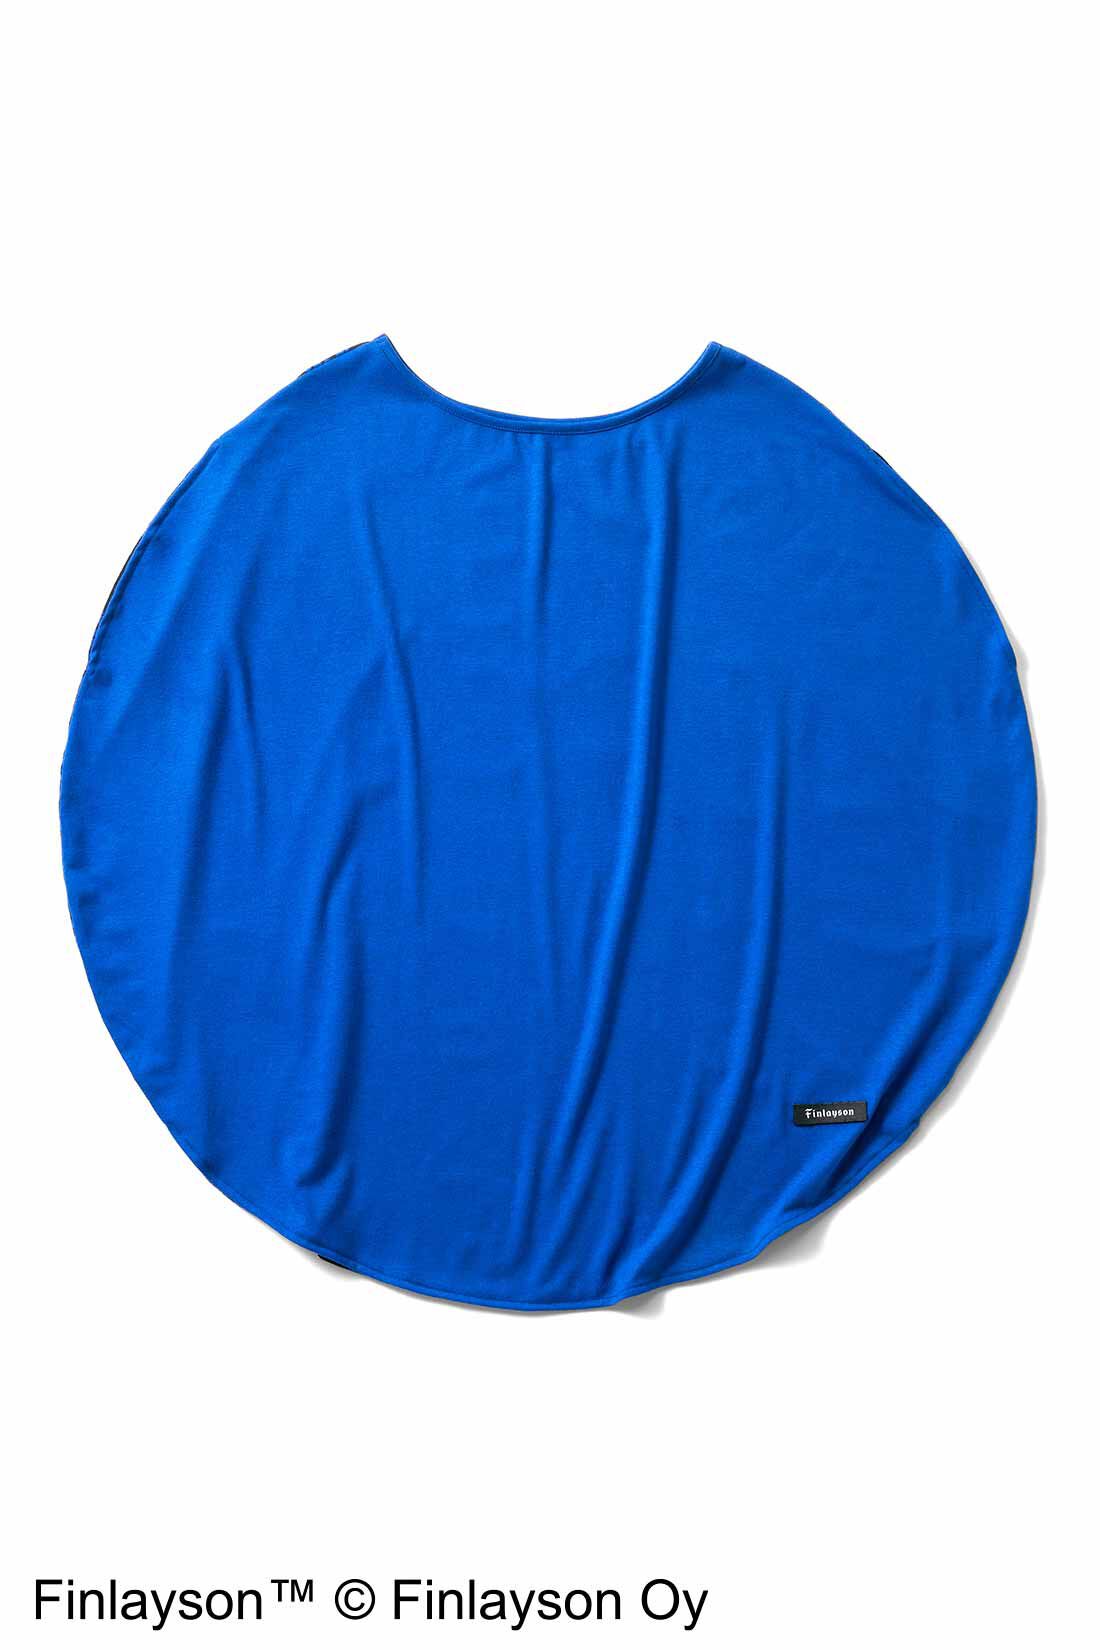 シロップ．|フィンレイソン　前後ろ着られる まぁるい形のTシャツ〈オプティネン オメナ〉|無地のブルーとプリント、どちらを前にしても着られるから、一枚で2通りの着こなしが楽しめます。